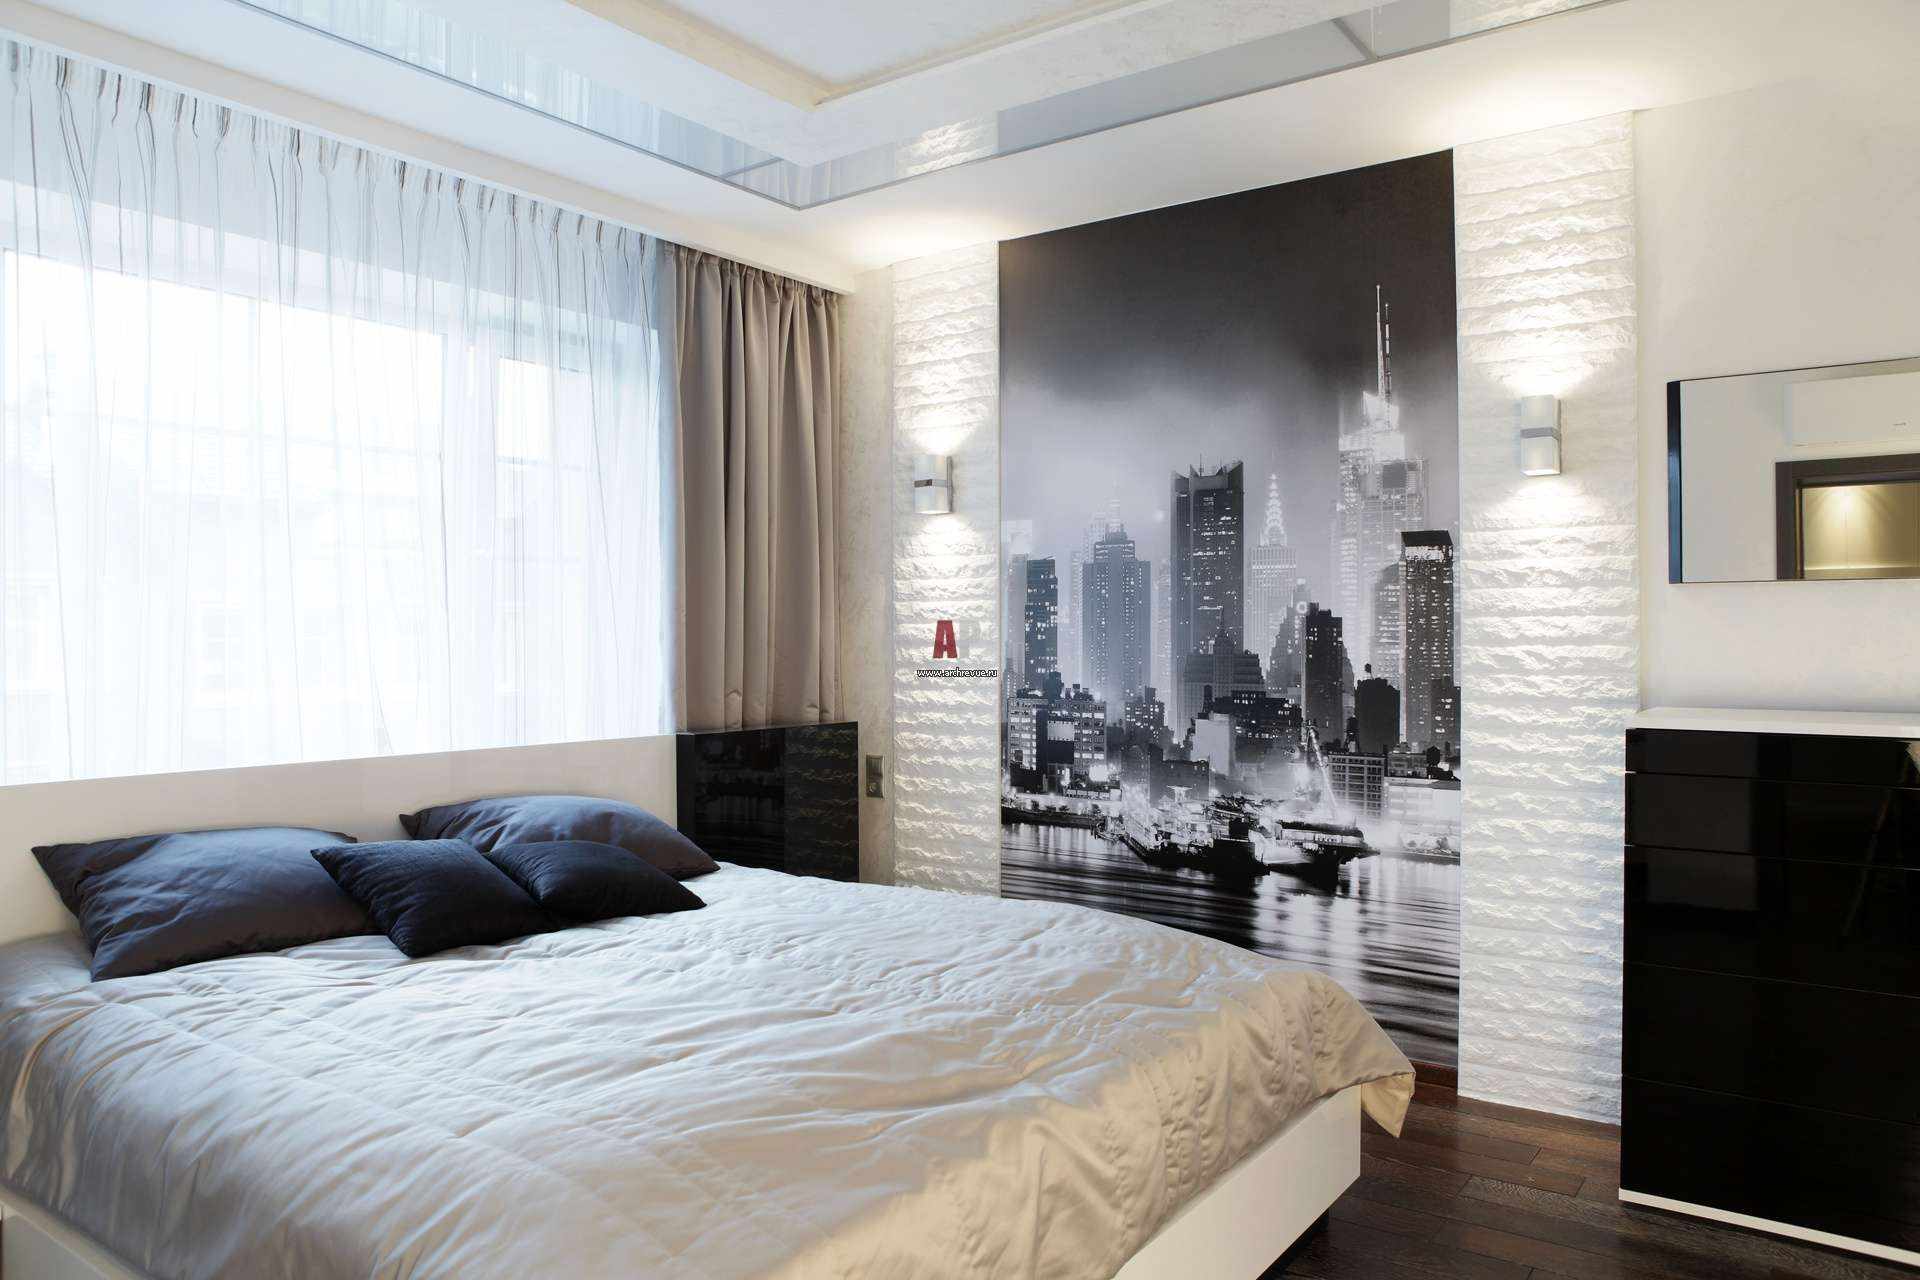 فكرة زخرفة مشرقة على نمط الجدران في غرفة النوم